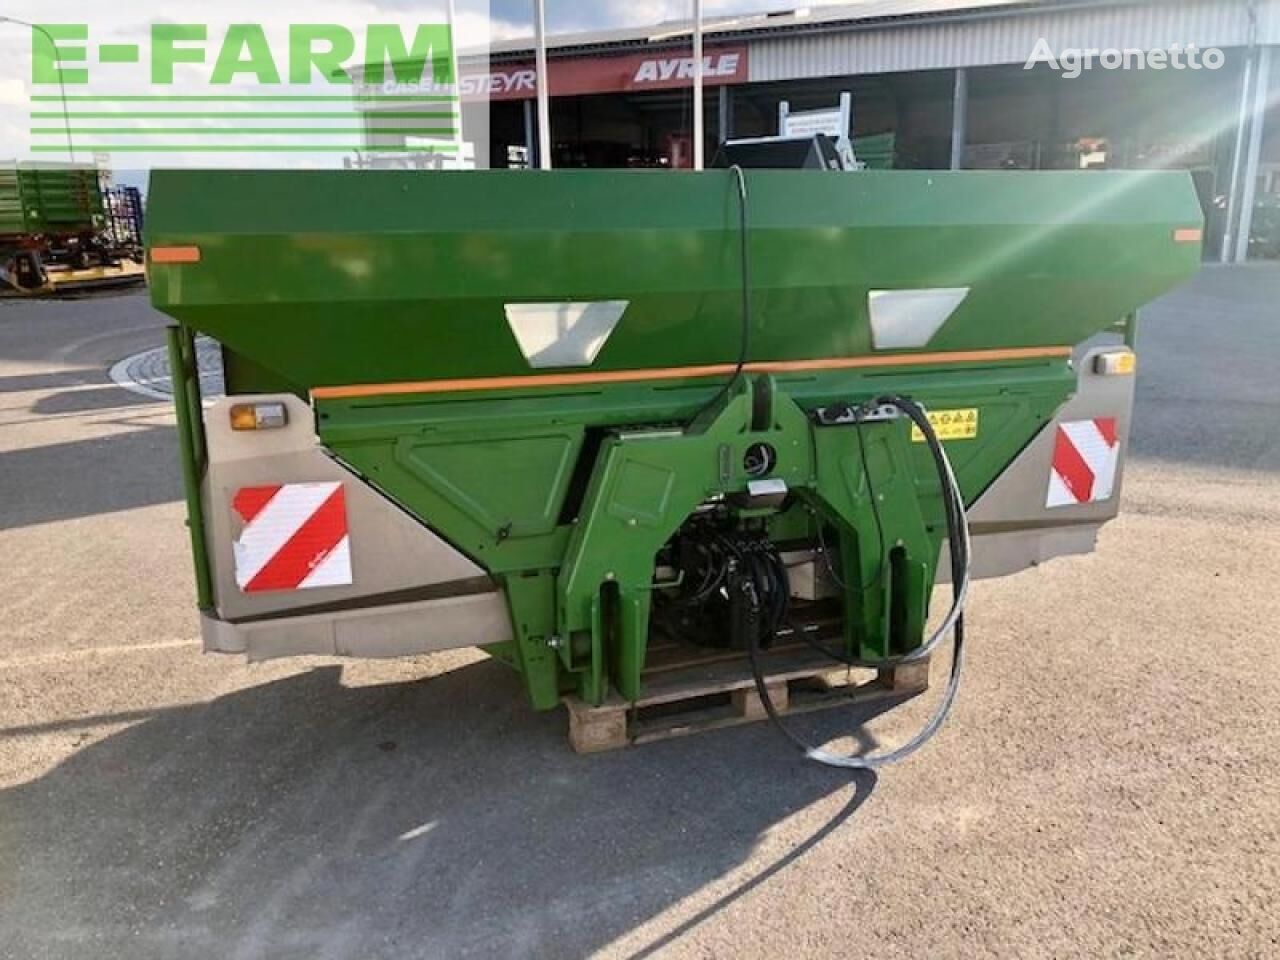 Amazone mounted fertilizer spreader